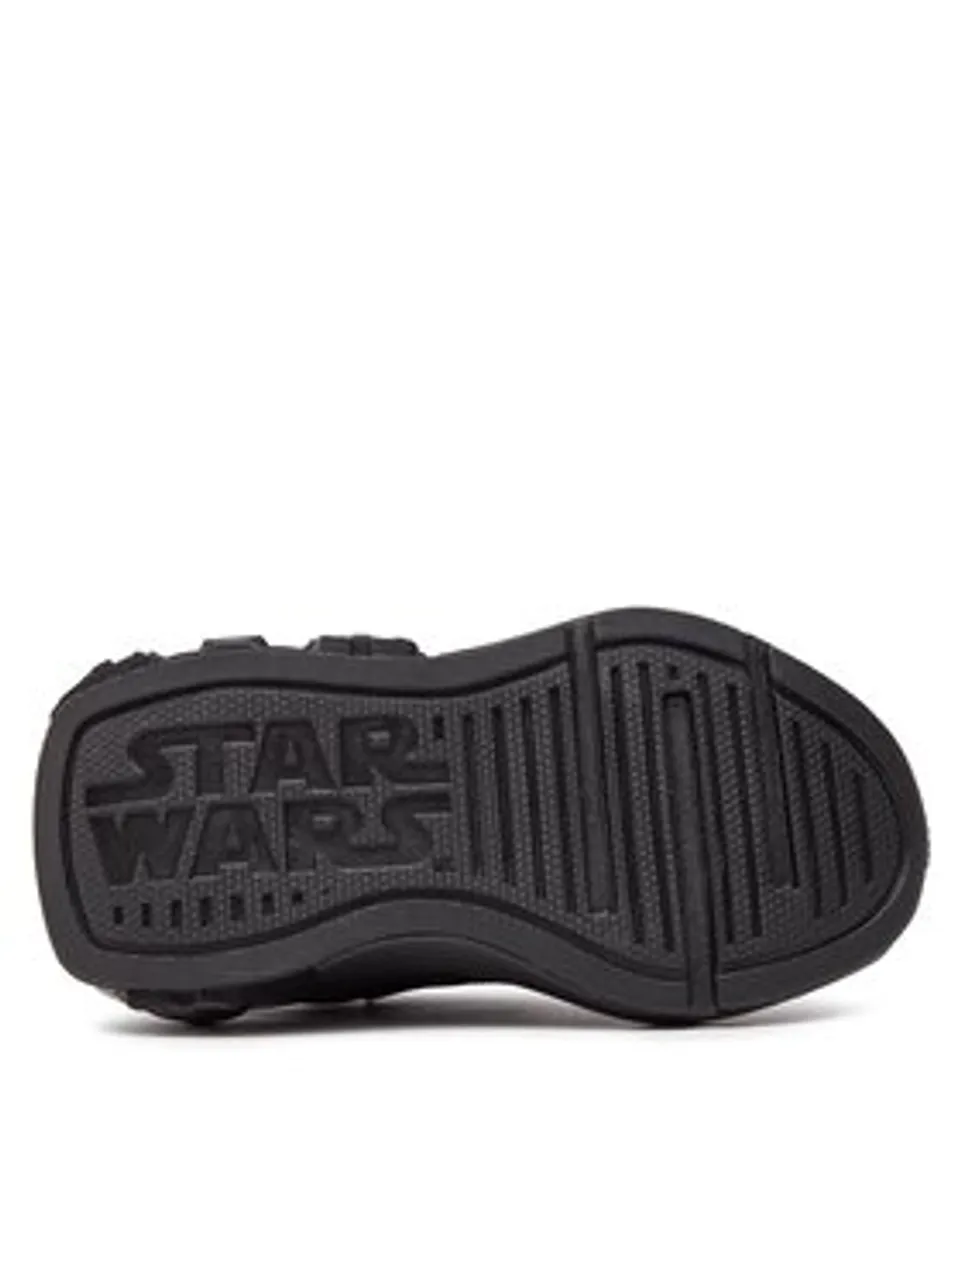 adidas Sneakers Star Wars Runner Kids ID5230 Schwarz